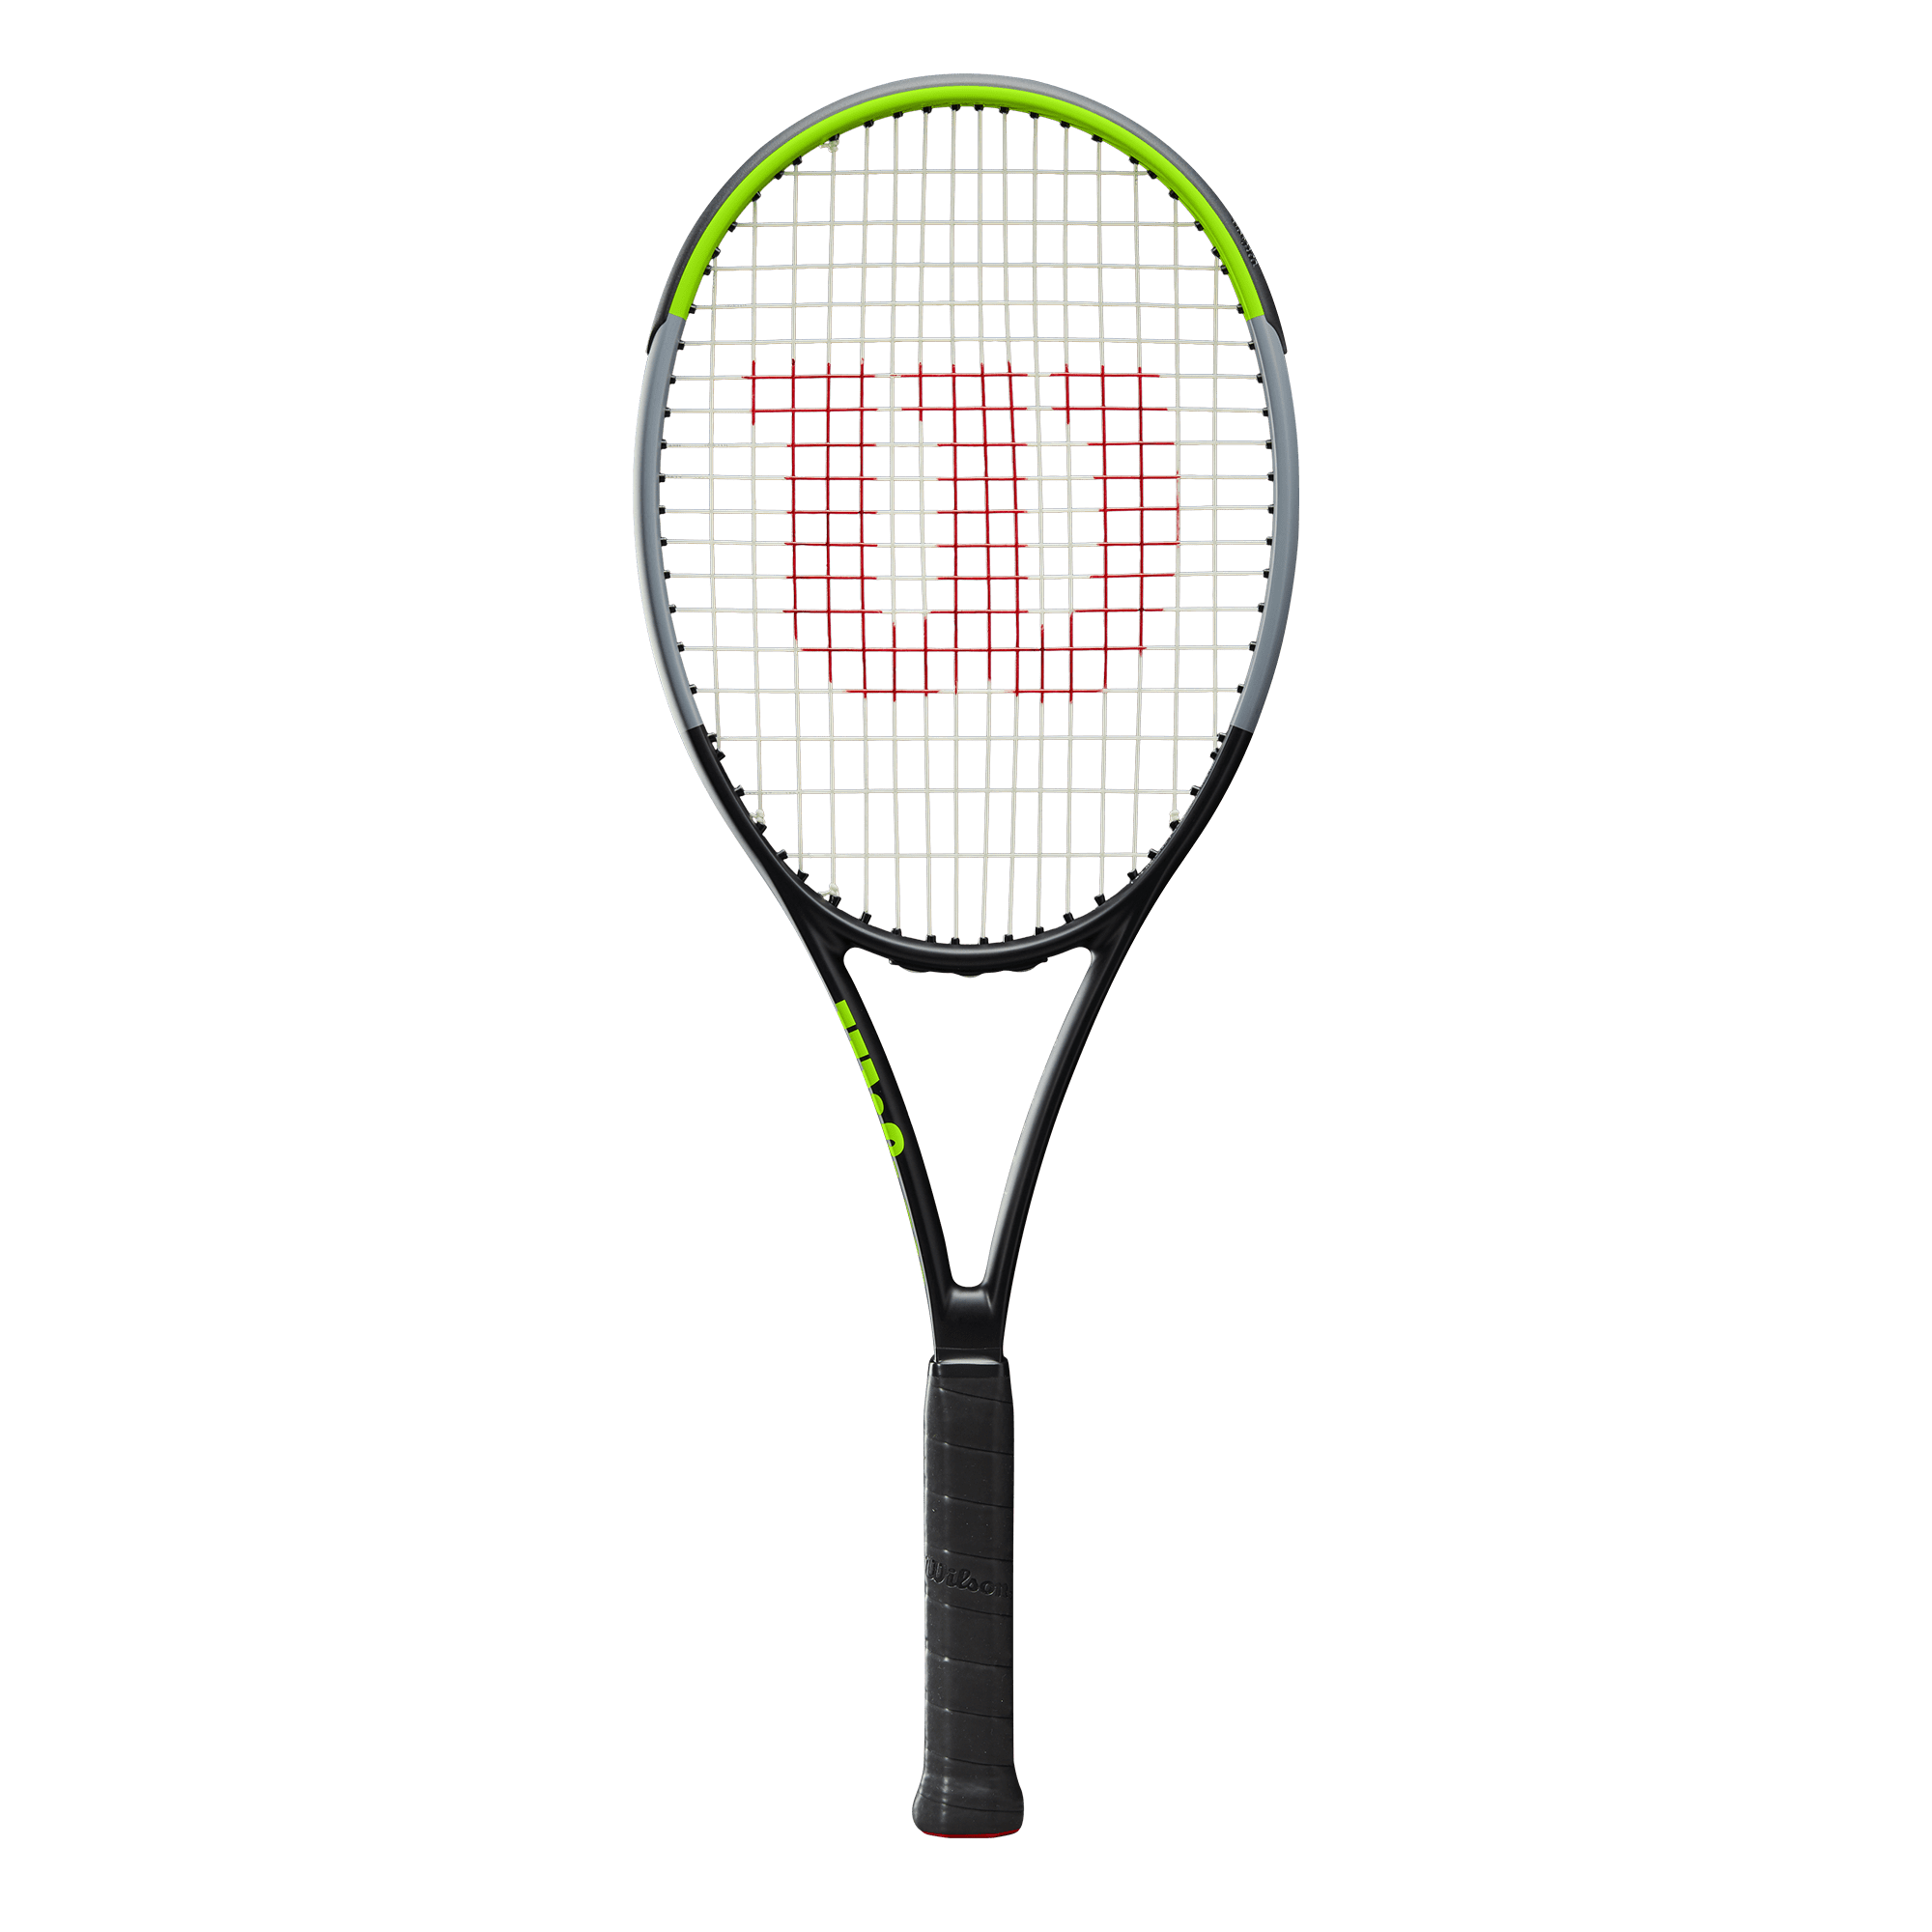 Grip 4 3/8" Wilson Blade 98 16x19 V7 Tennis Racquet Racket TNS Frame Unisex 